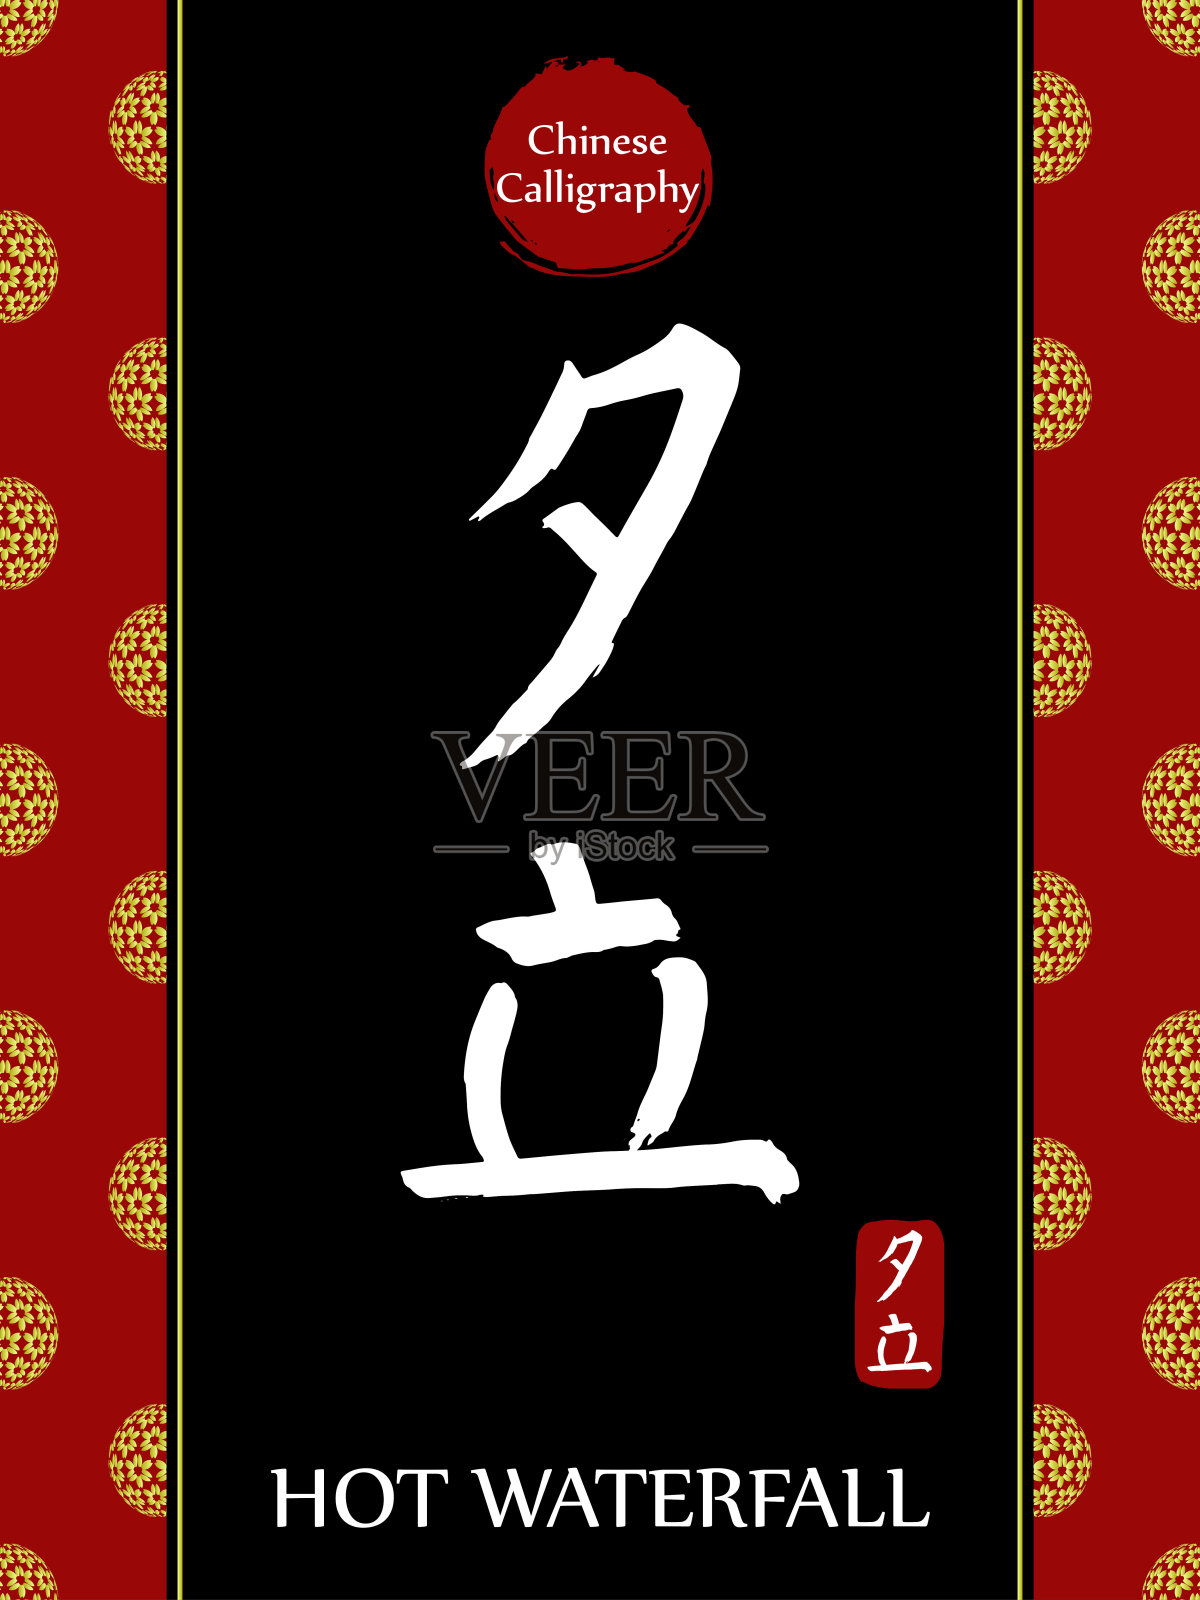 中国书法象形文字翻译:热瀑布。亚洲金花球农历新年图案。向量中国符号在黑色背景。手绘图画文字。毛笔书法插画图片素材